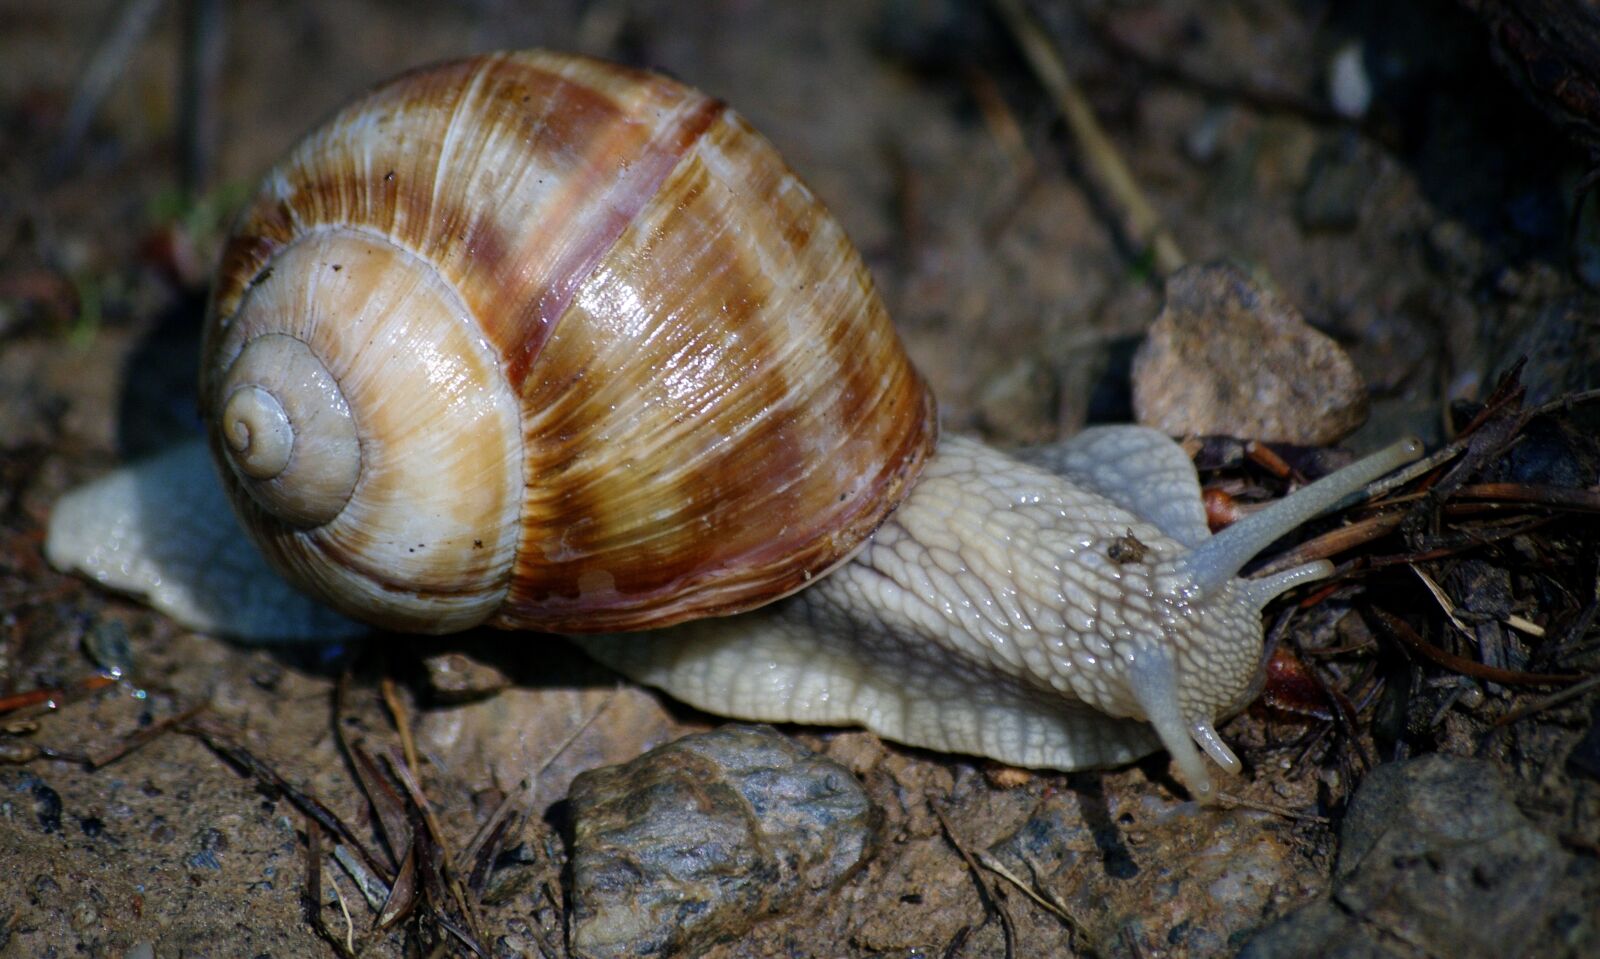 Pentax K-7 sample photo. Snail, snails, shell photography